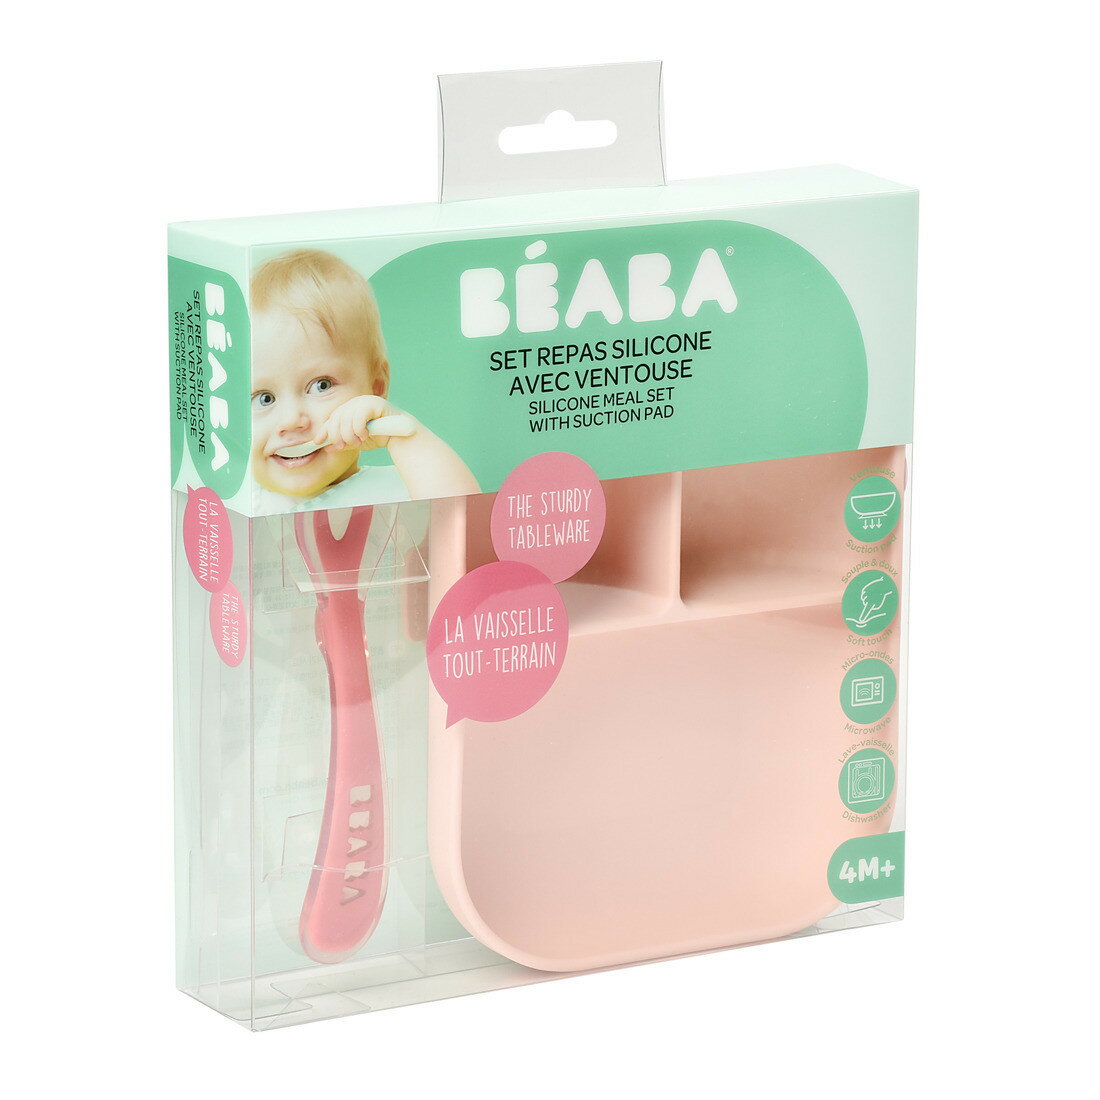 BEABA ベアバ 吸盤付き シリコン プレート ＆ スプーン セット | 吸盤 くっつく ベビー 赤ちゃん キッズ 子ども 食器 シンプル おしゃれ かわいい 離乳食 練習 トレーニング 食洗機対応